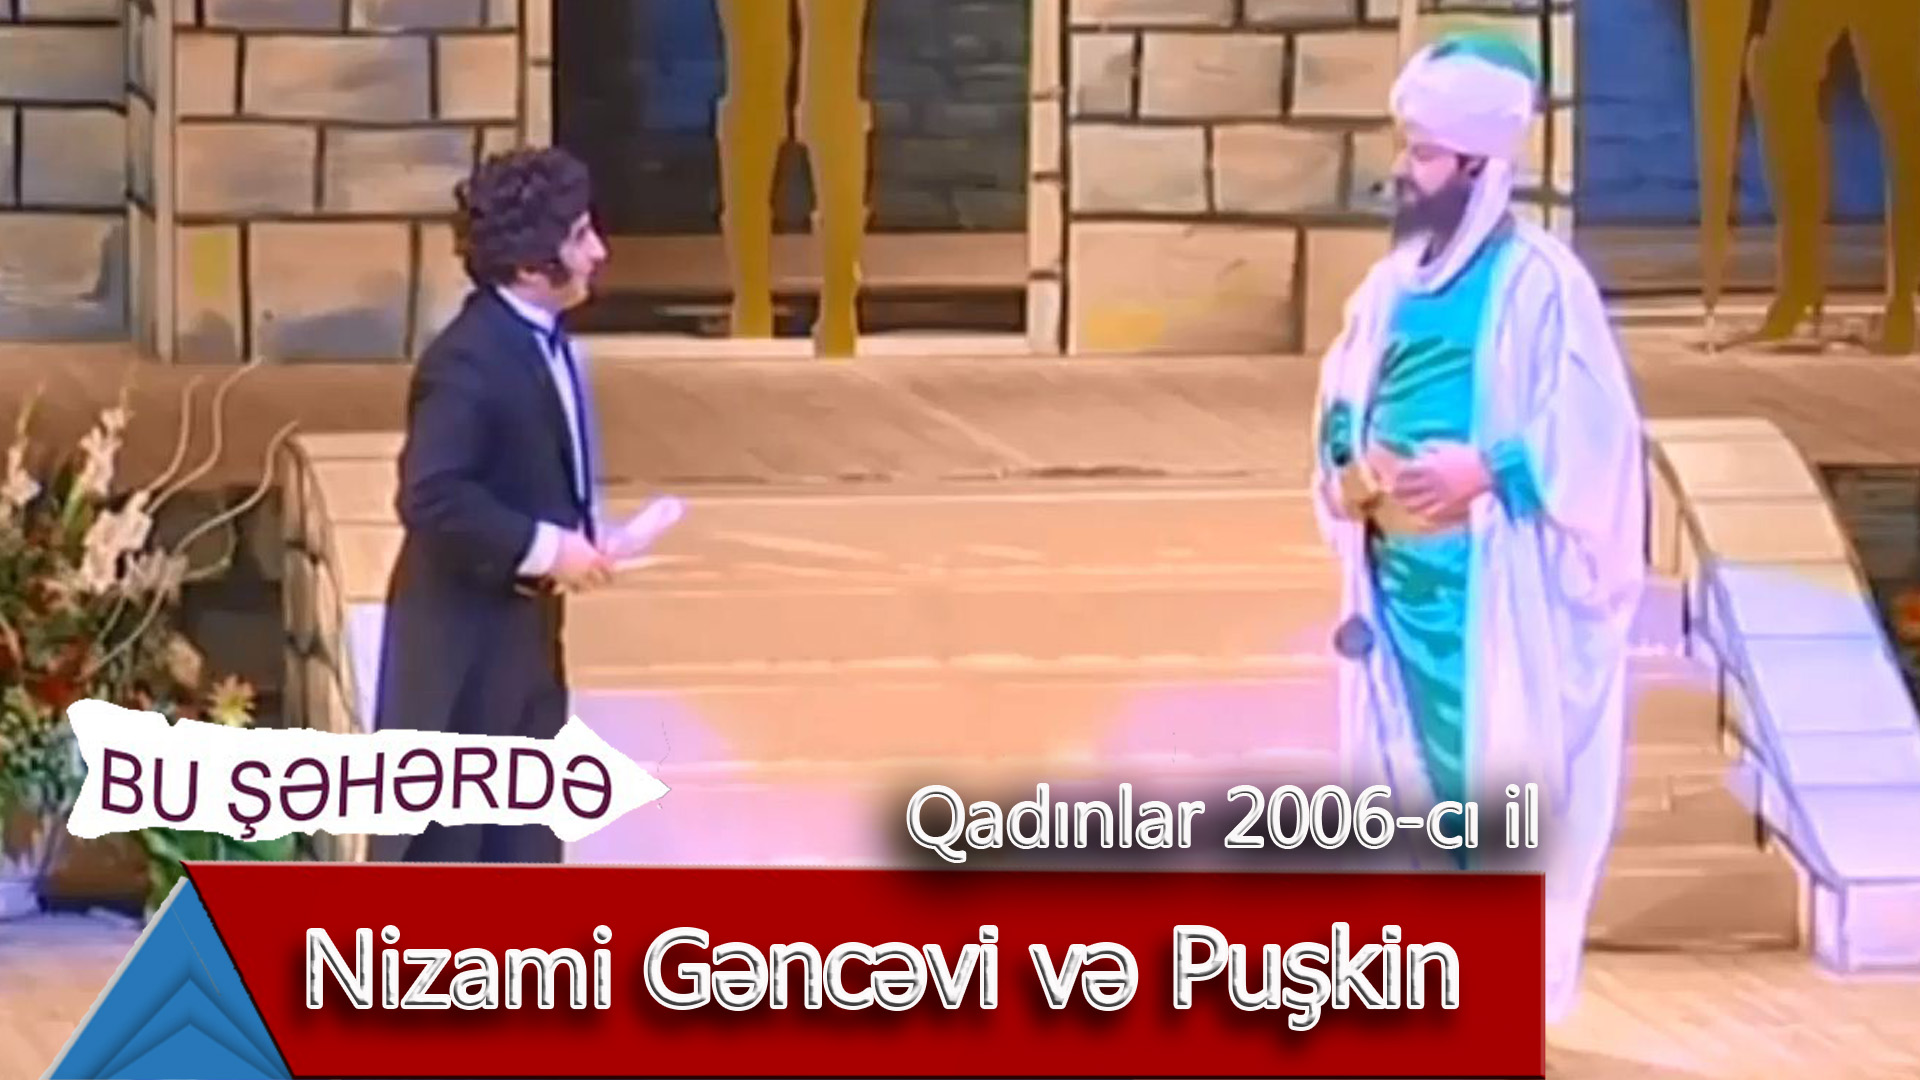 Bu Şəhərdə - Nizami Gəncəvi və Puşkin (Qadınlar konserti, 2006)